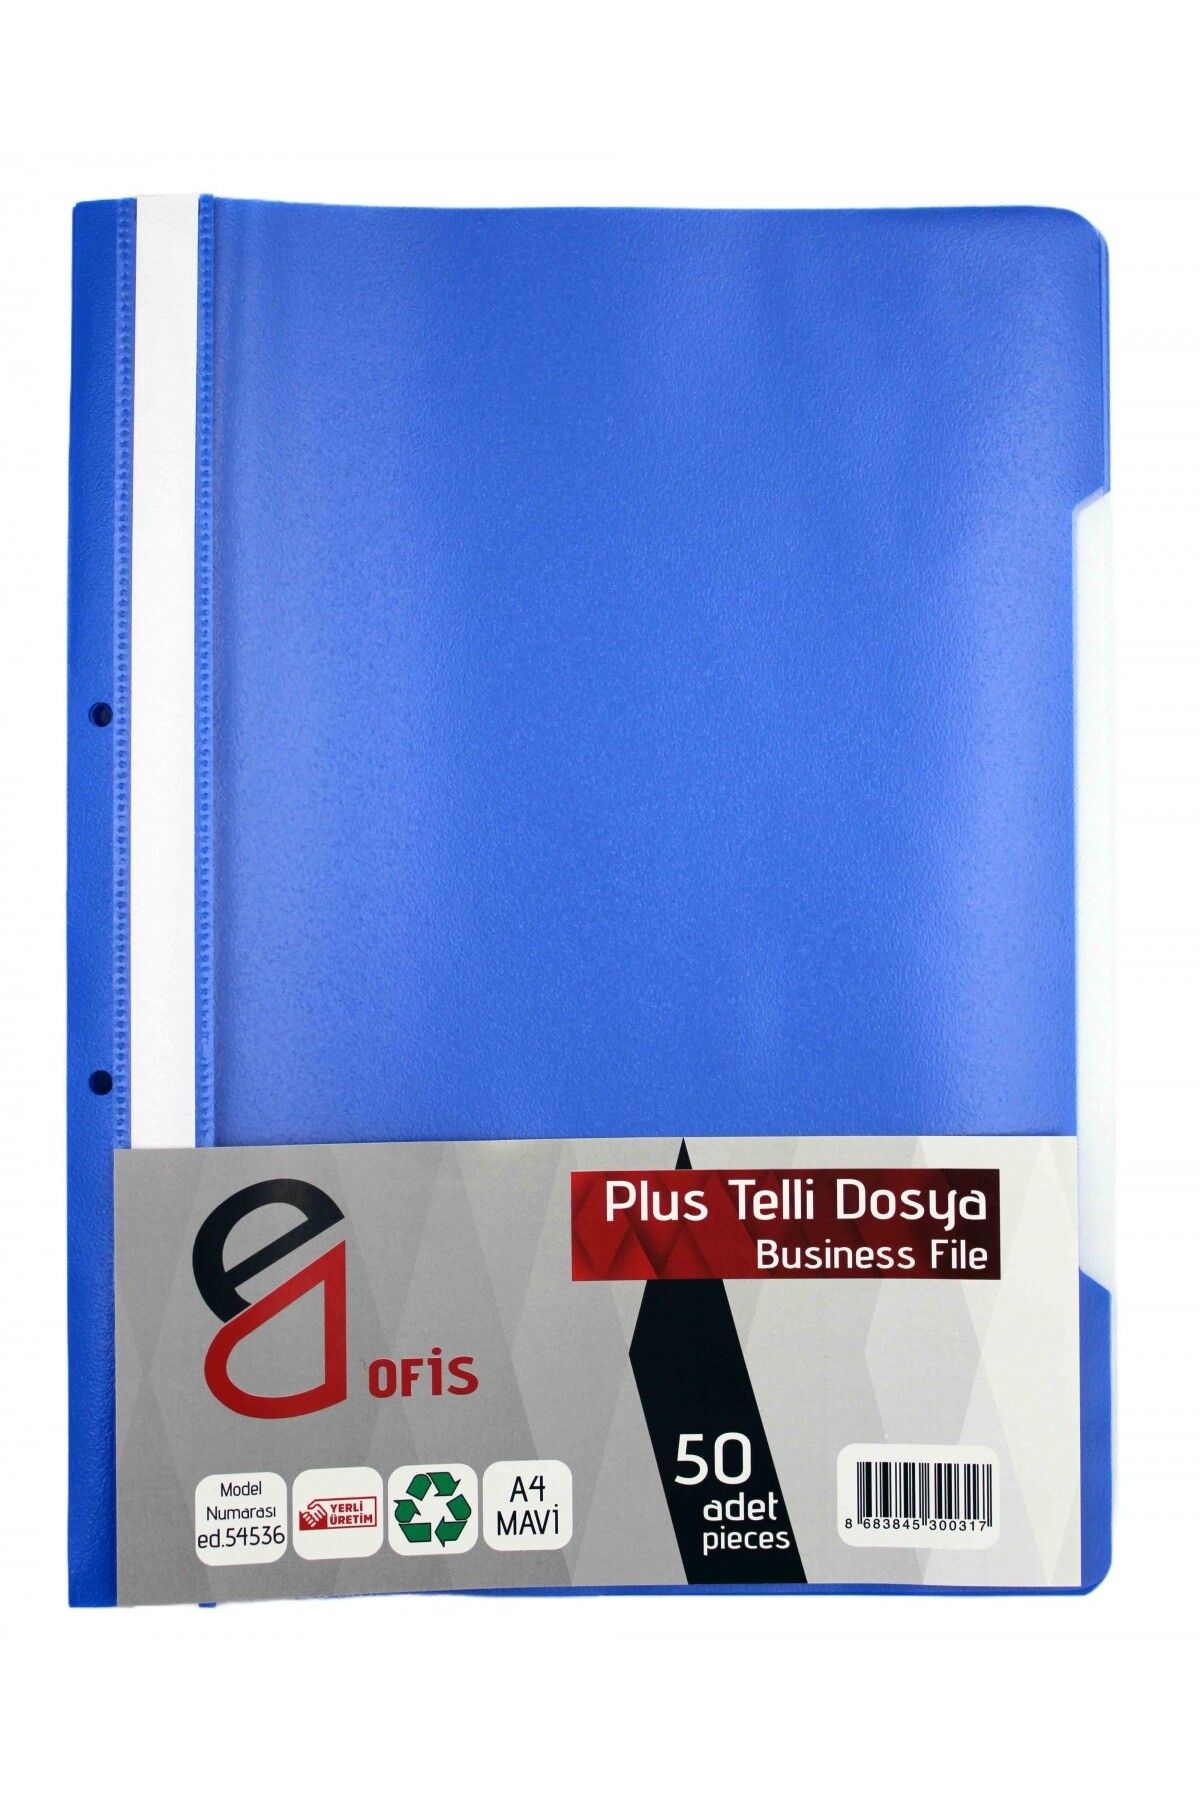 E&D OFİS E&d Ofis Plus Mavi Telli Dosya 50'li Paket